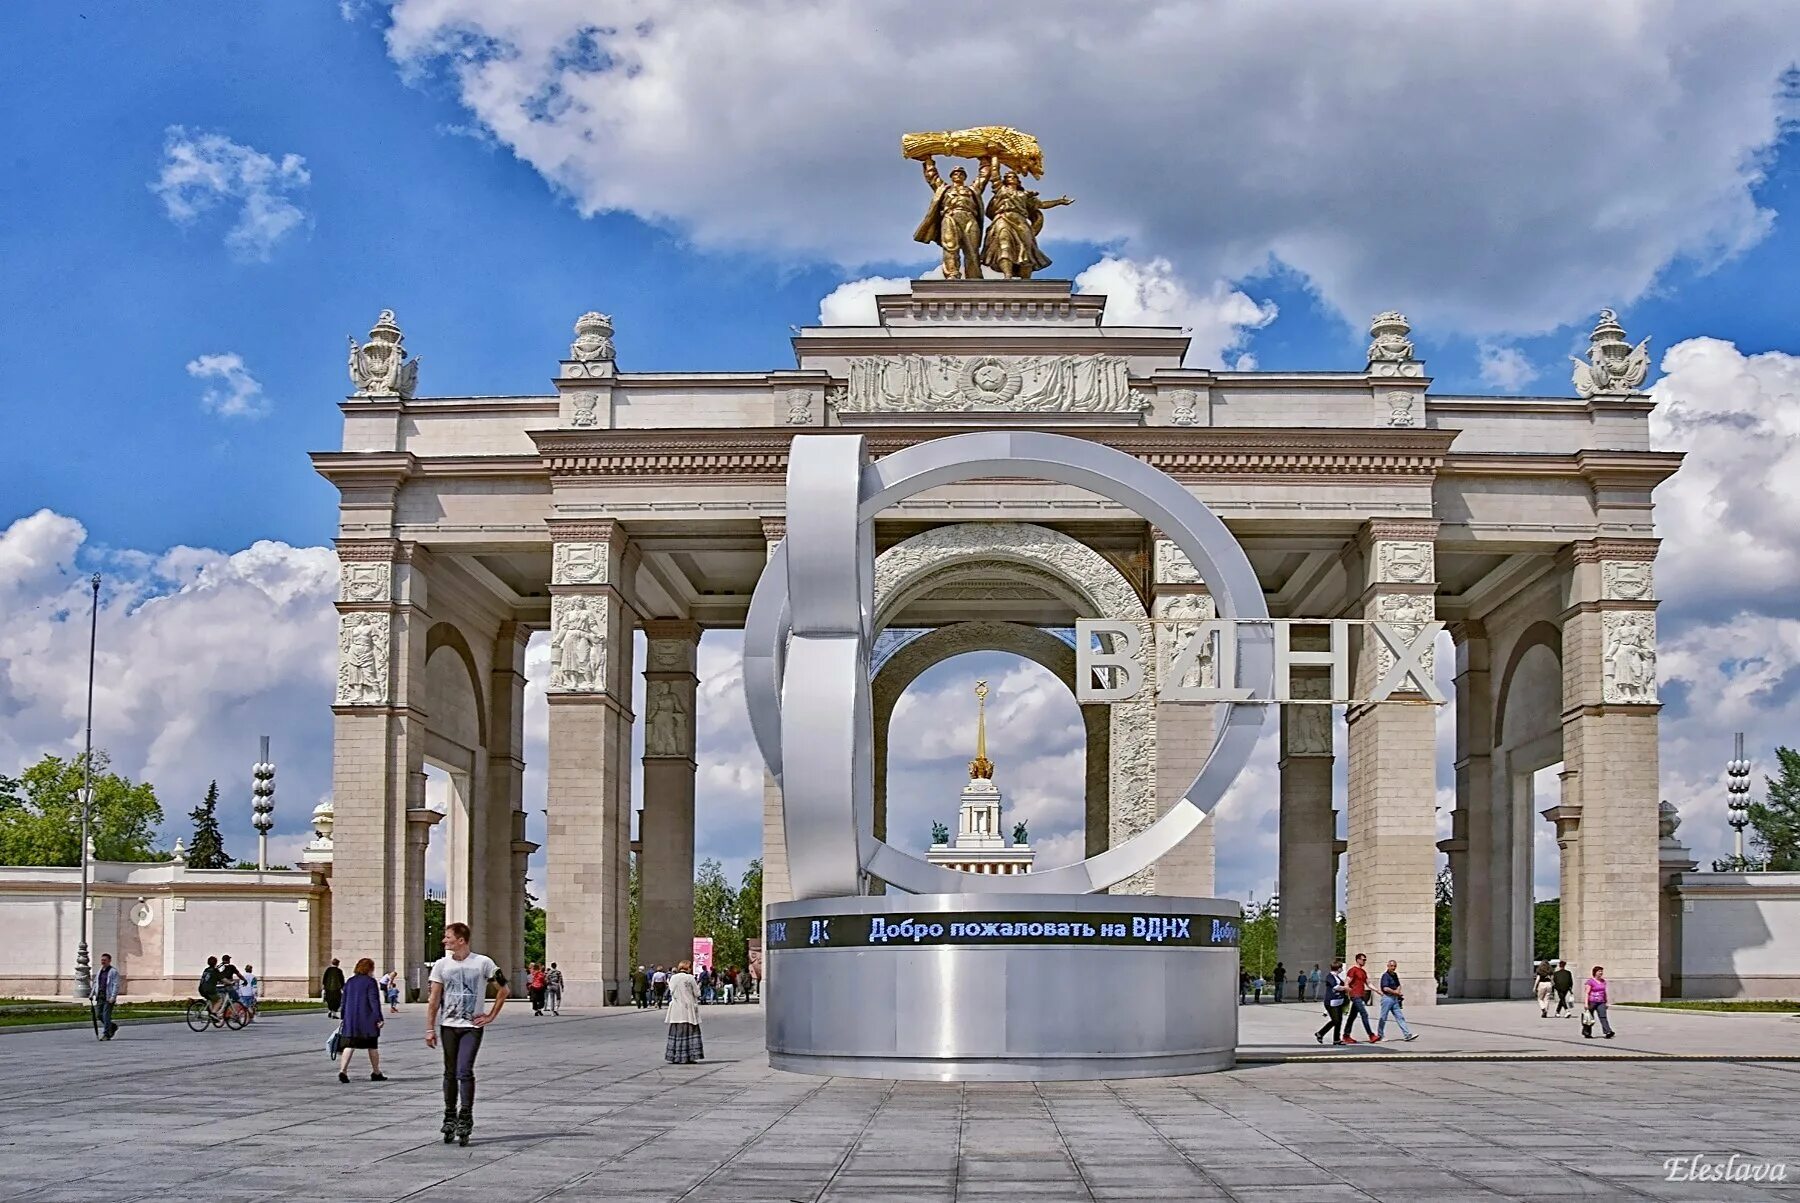 Главная арка ВДНХ. Триумфальная арка ВДНХ. Парк ВДНХ ворота. ВДНХ входная арка.